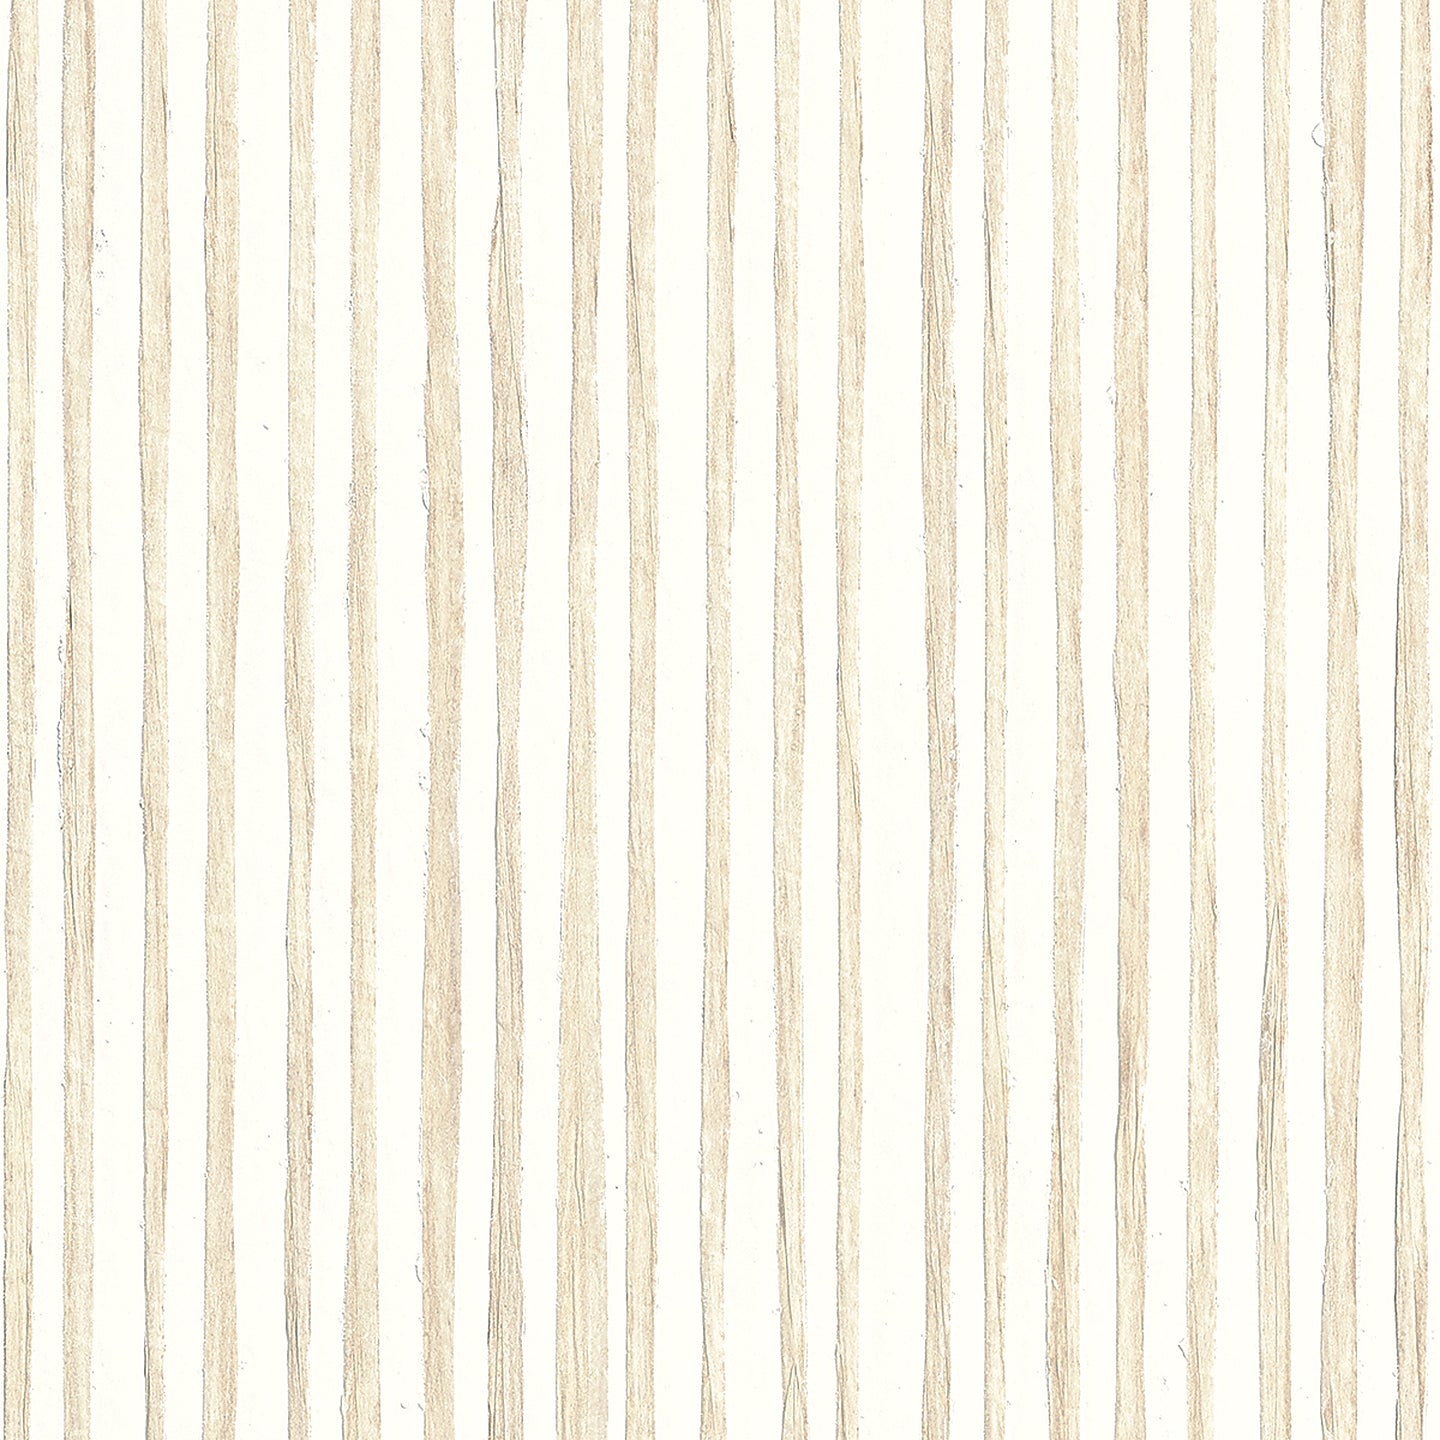 Purchase Phillip Jeffries Wallpaper - 10362, Zebra Grass - White Mocha 